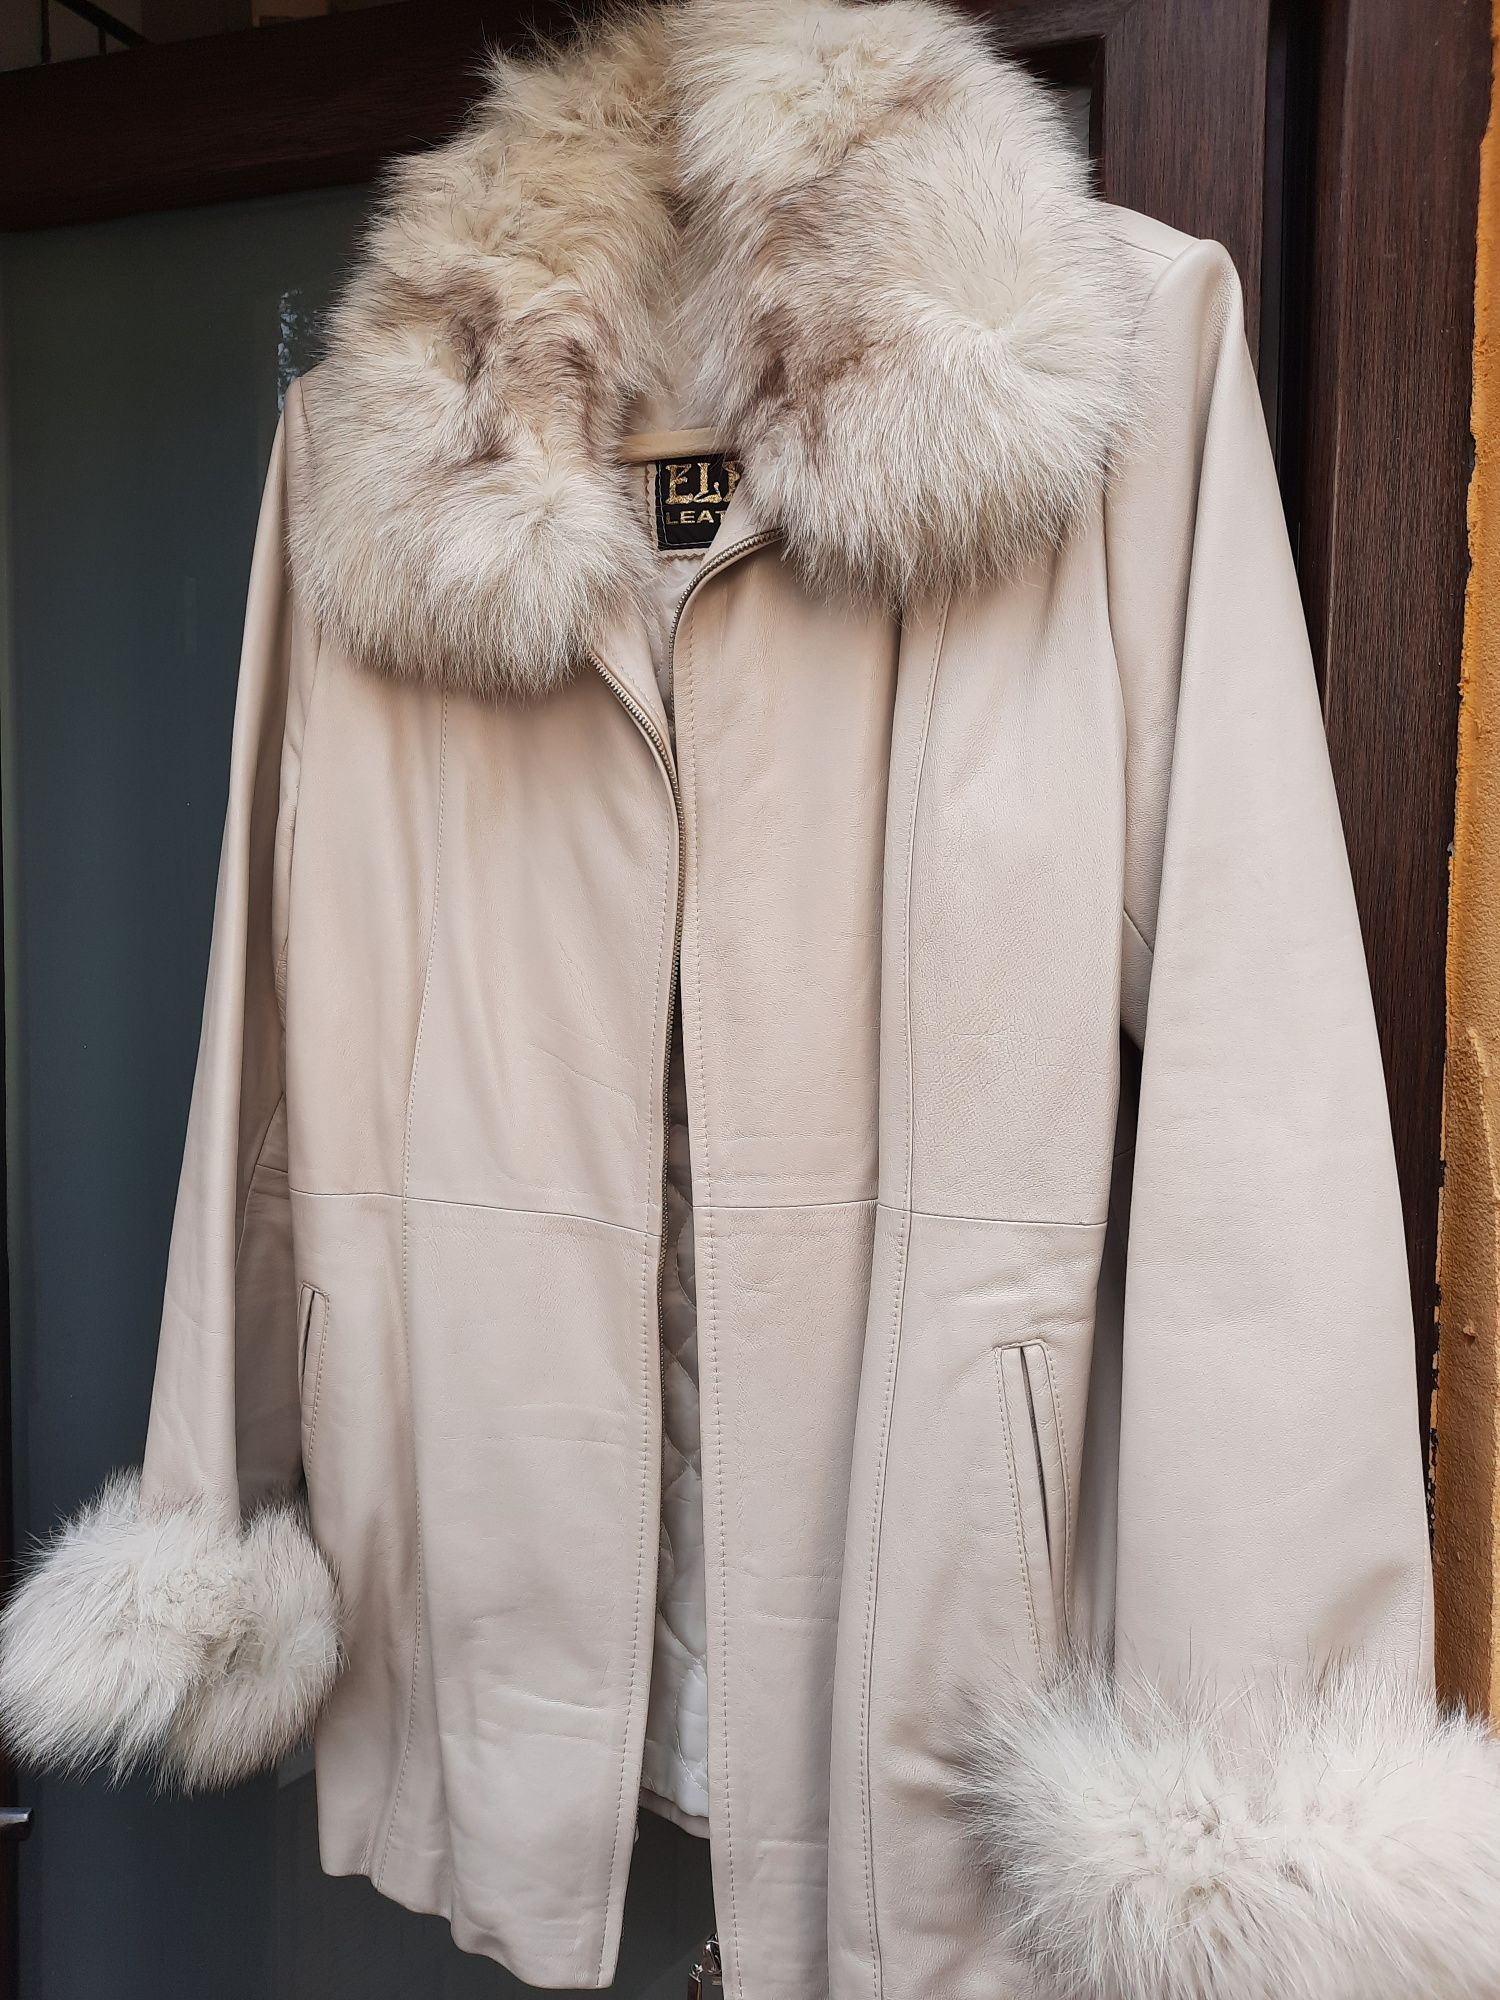 Jachete de iarna,L,XL,Blanite lungi sau scurte,Cardigan,Haine de piele